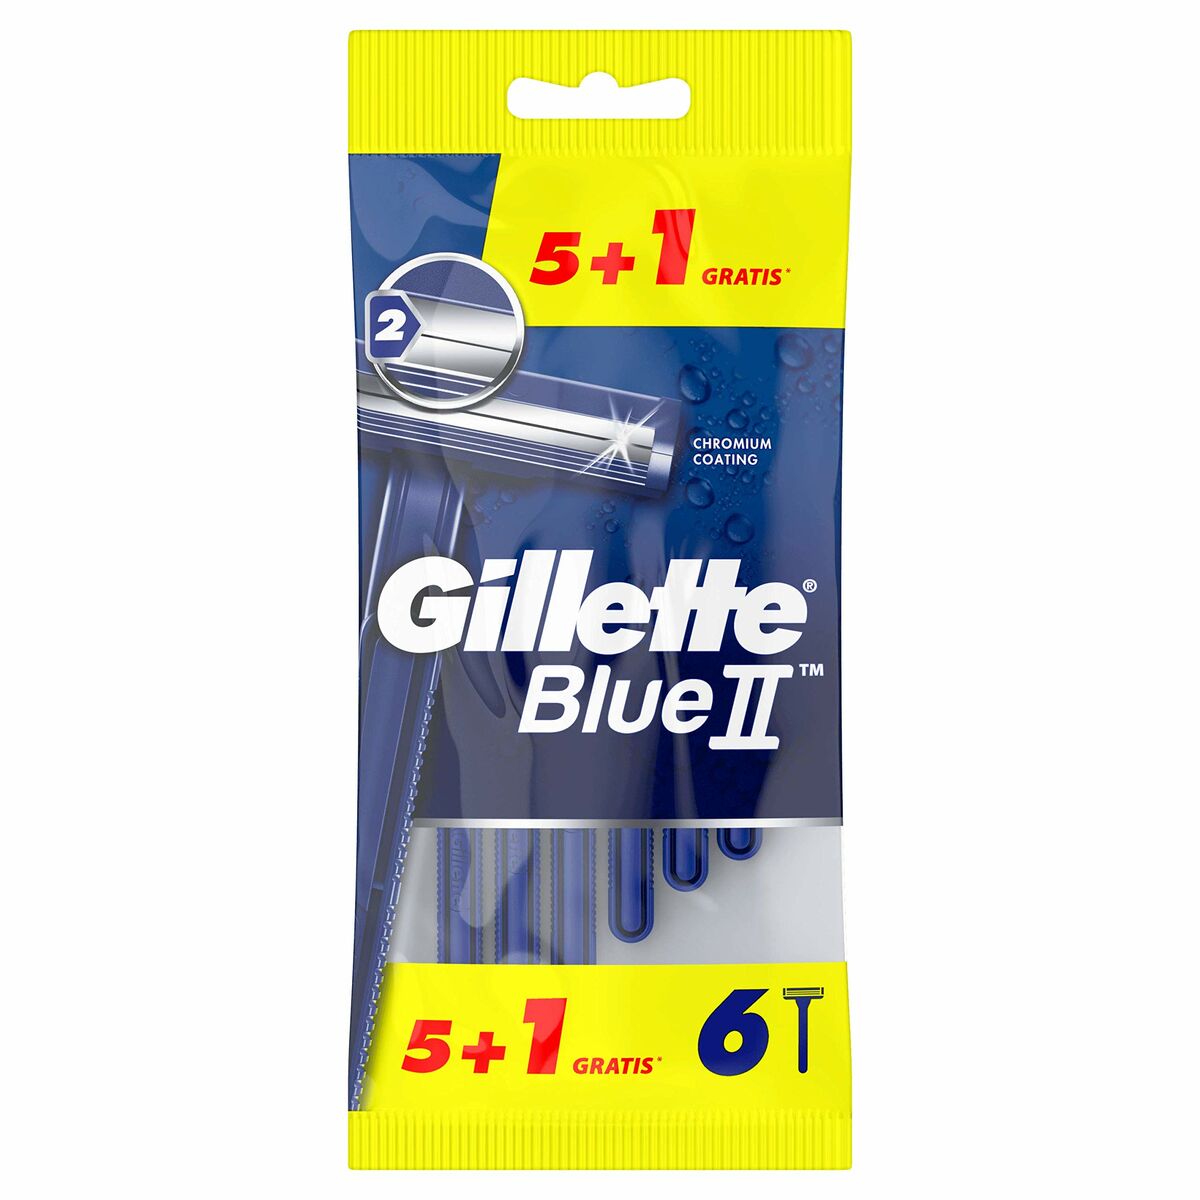 Handmatig scheermesje Gillette Blue II 6 Stuks